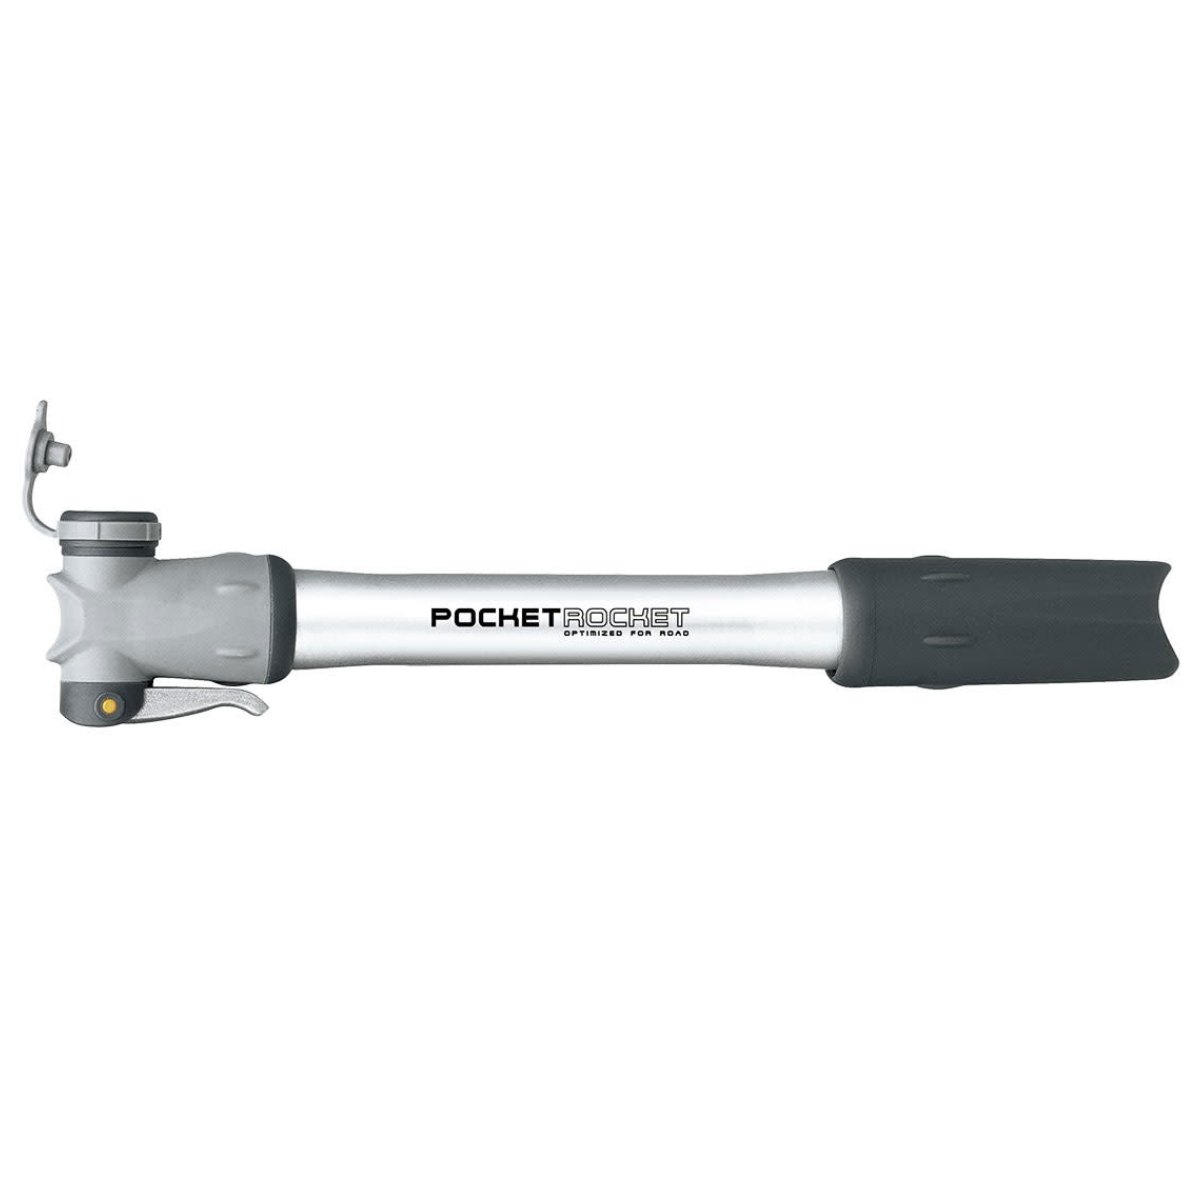 Pompe portable Topeak pocket rocket